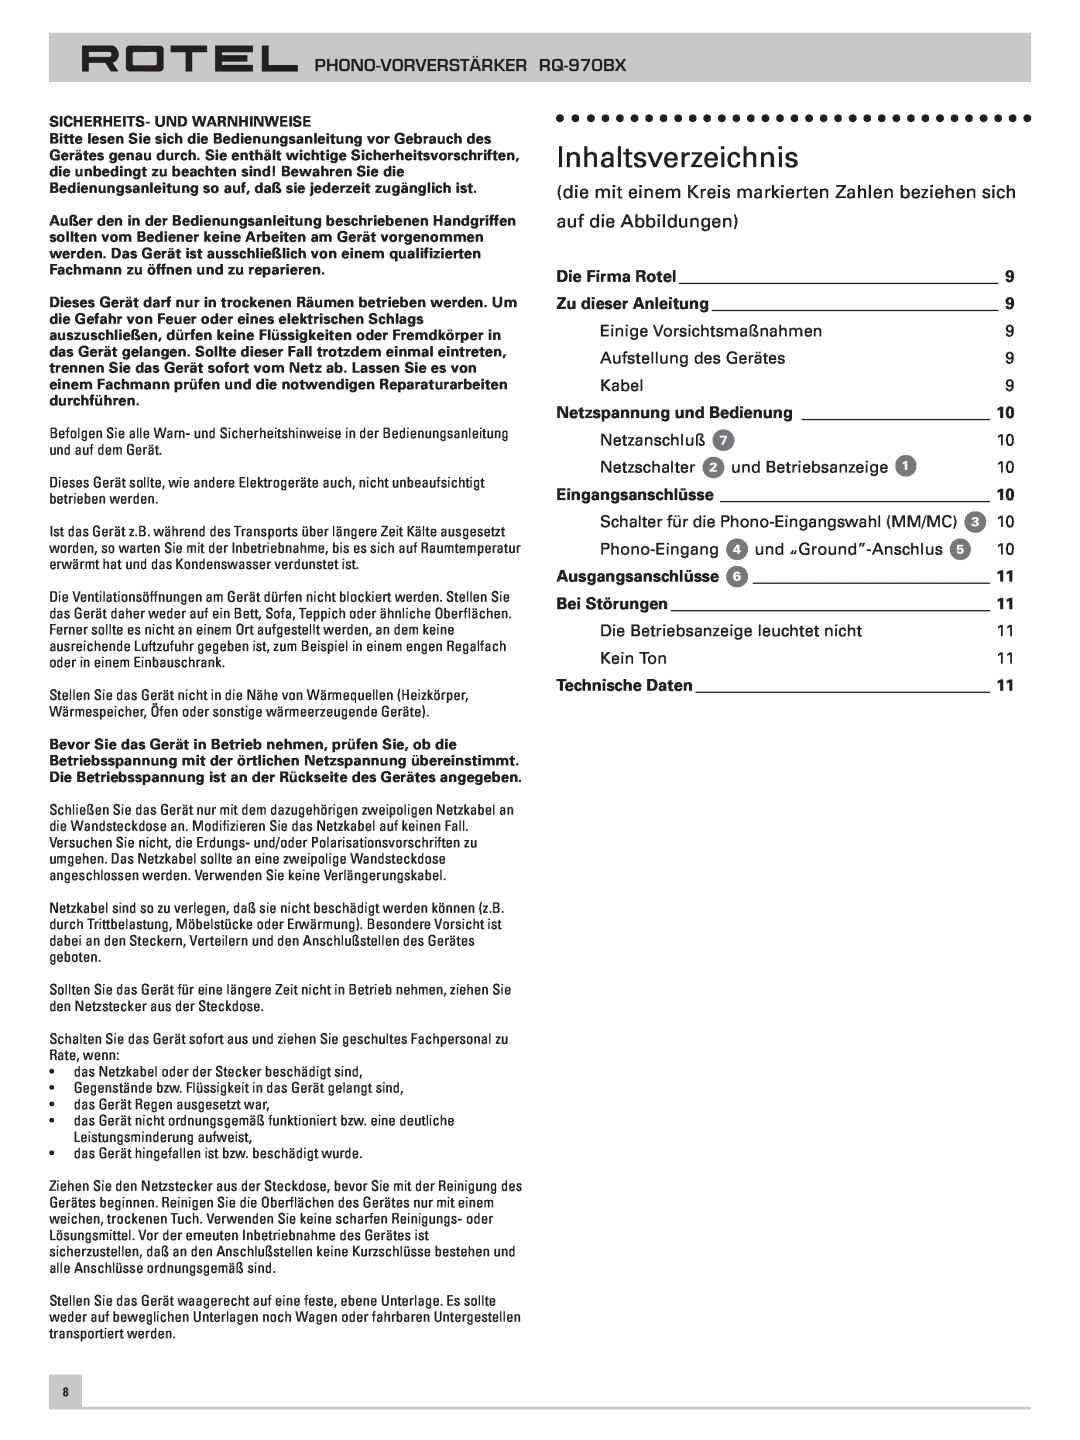 Rotel RQ-970BX owner manual Inhaltsverzeichnis, auf die Abbildungen 